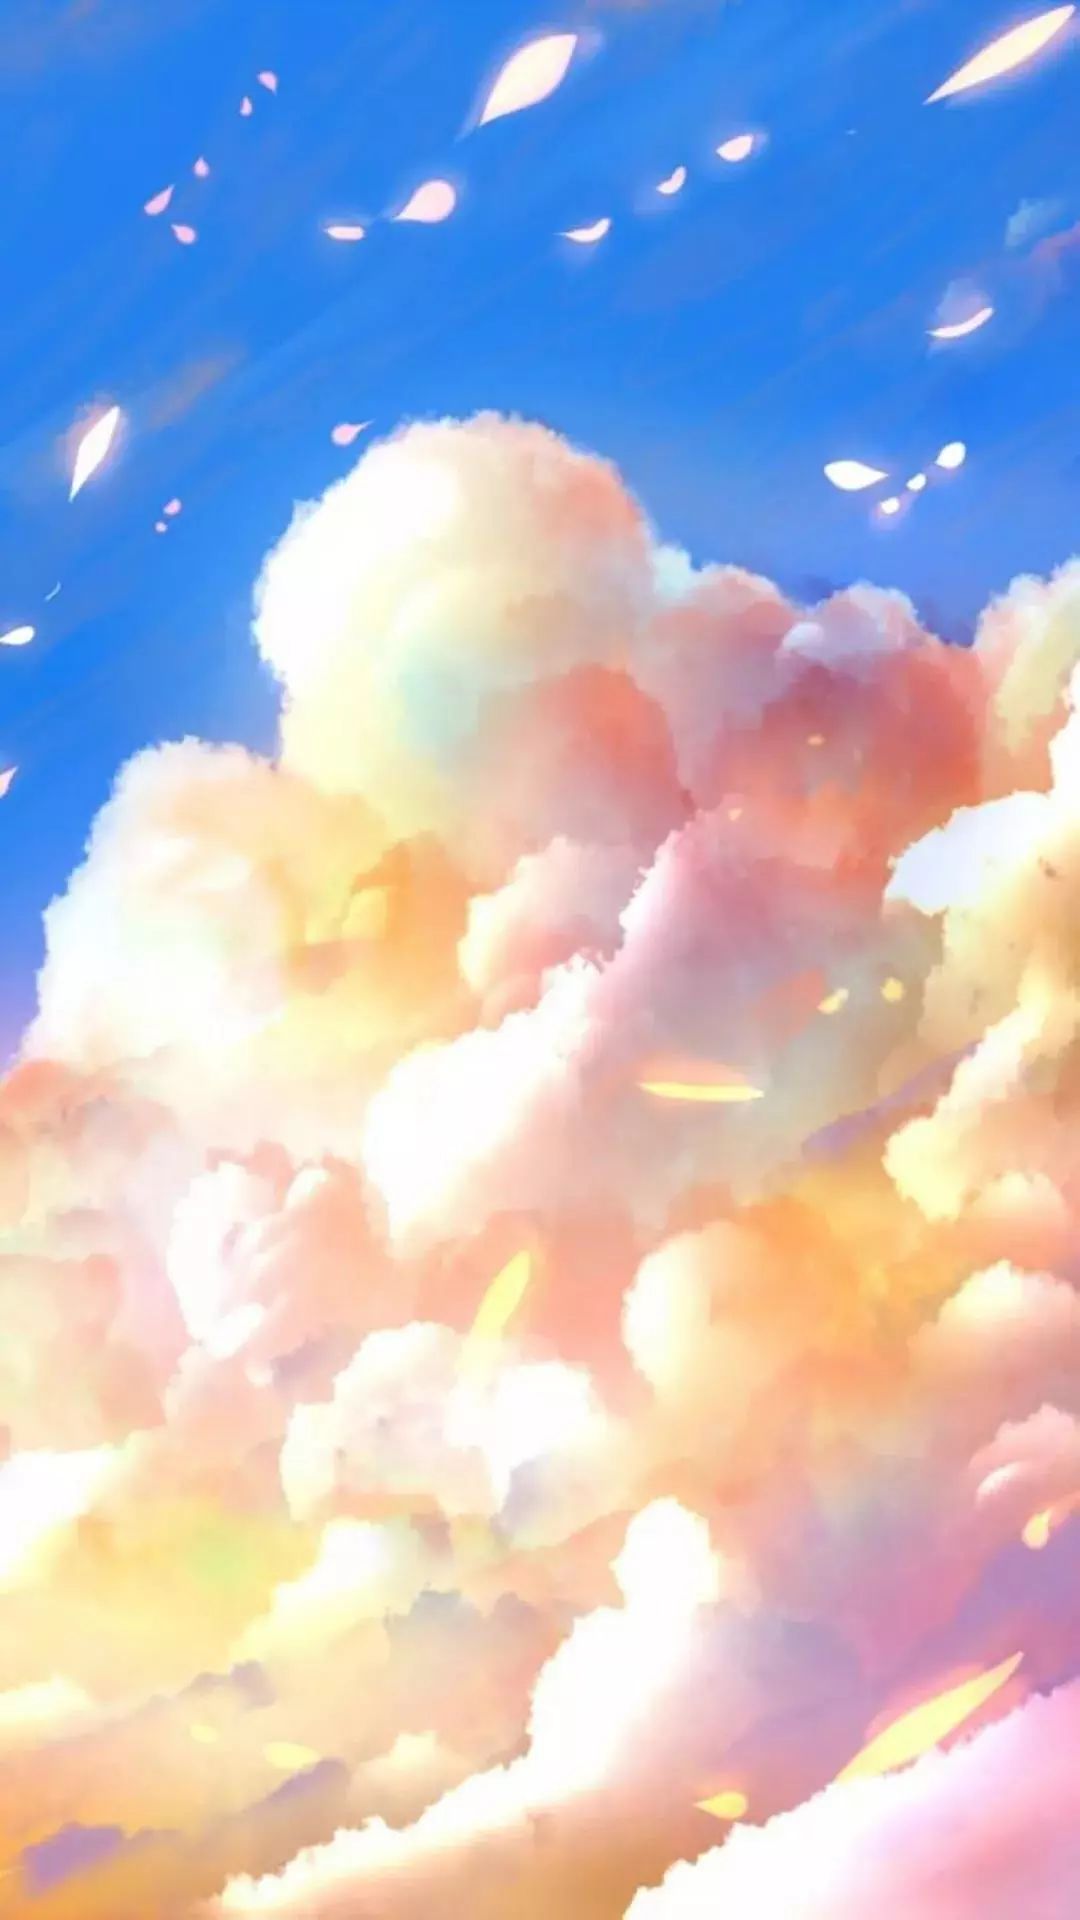 超级绝美的天空壁纸!让你飞翔在梦幻的王国里